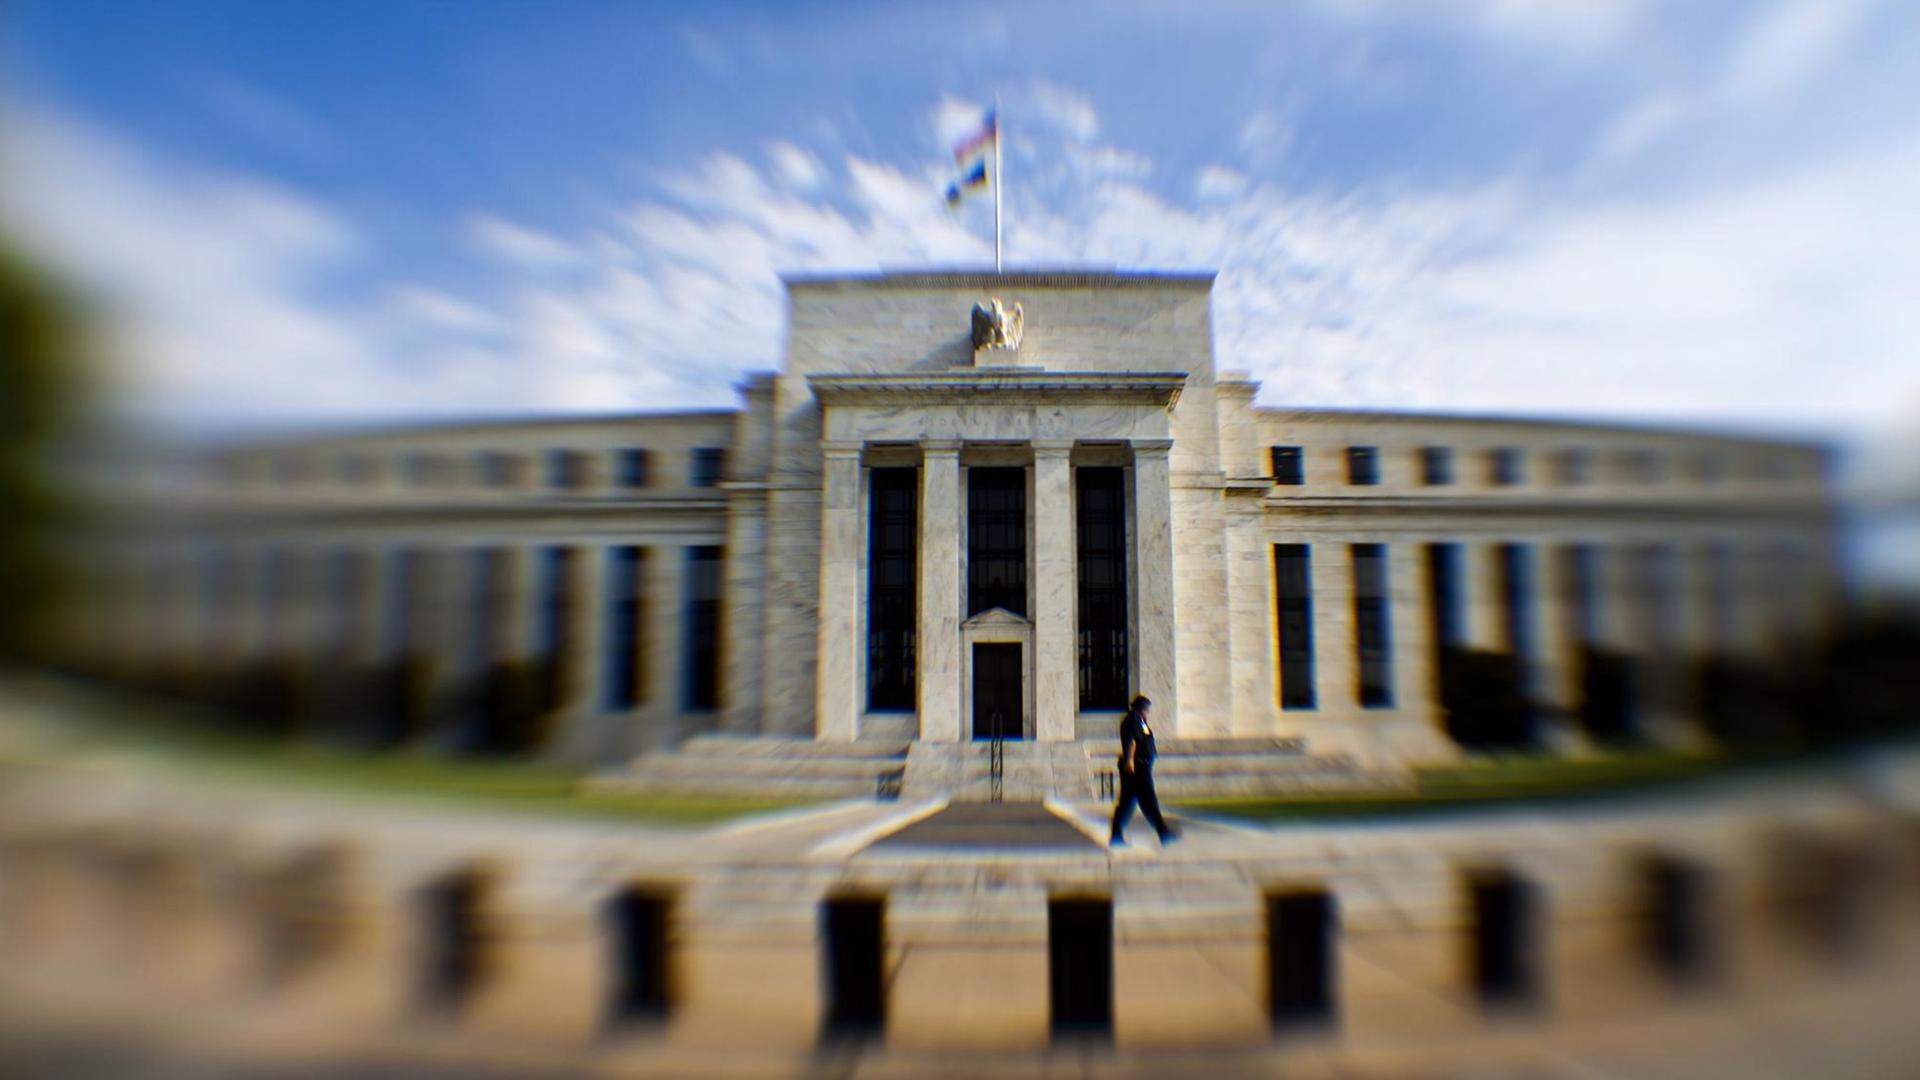 Das Hauptgebäude der US-Notenbank (Federal Reserve) in Washington DC, USA, am 5. August 2011.